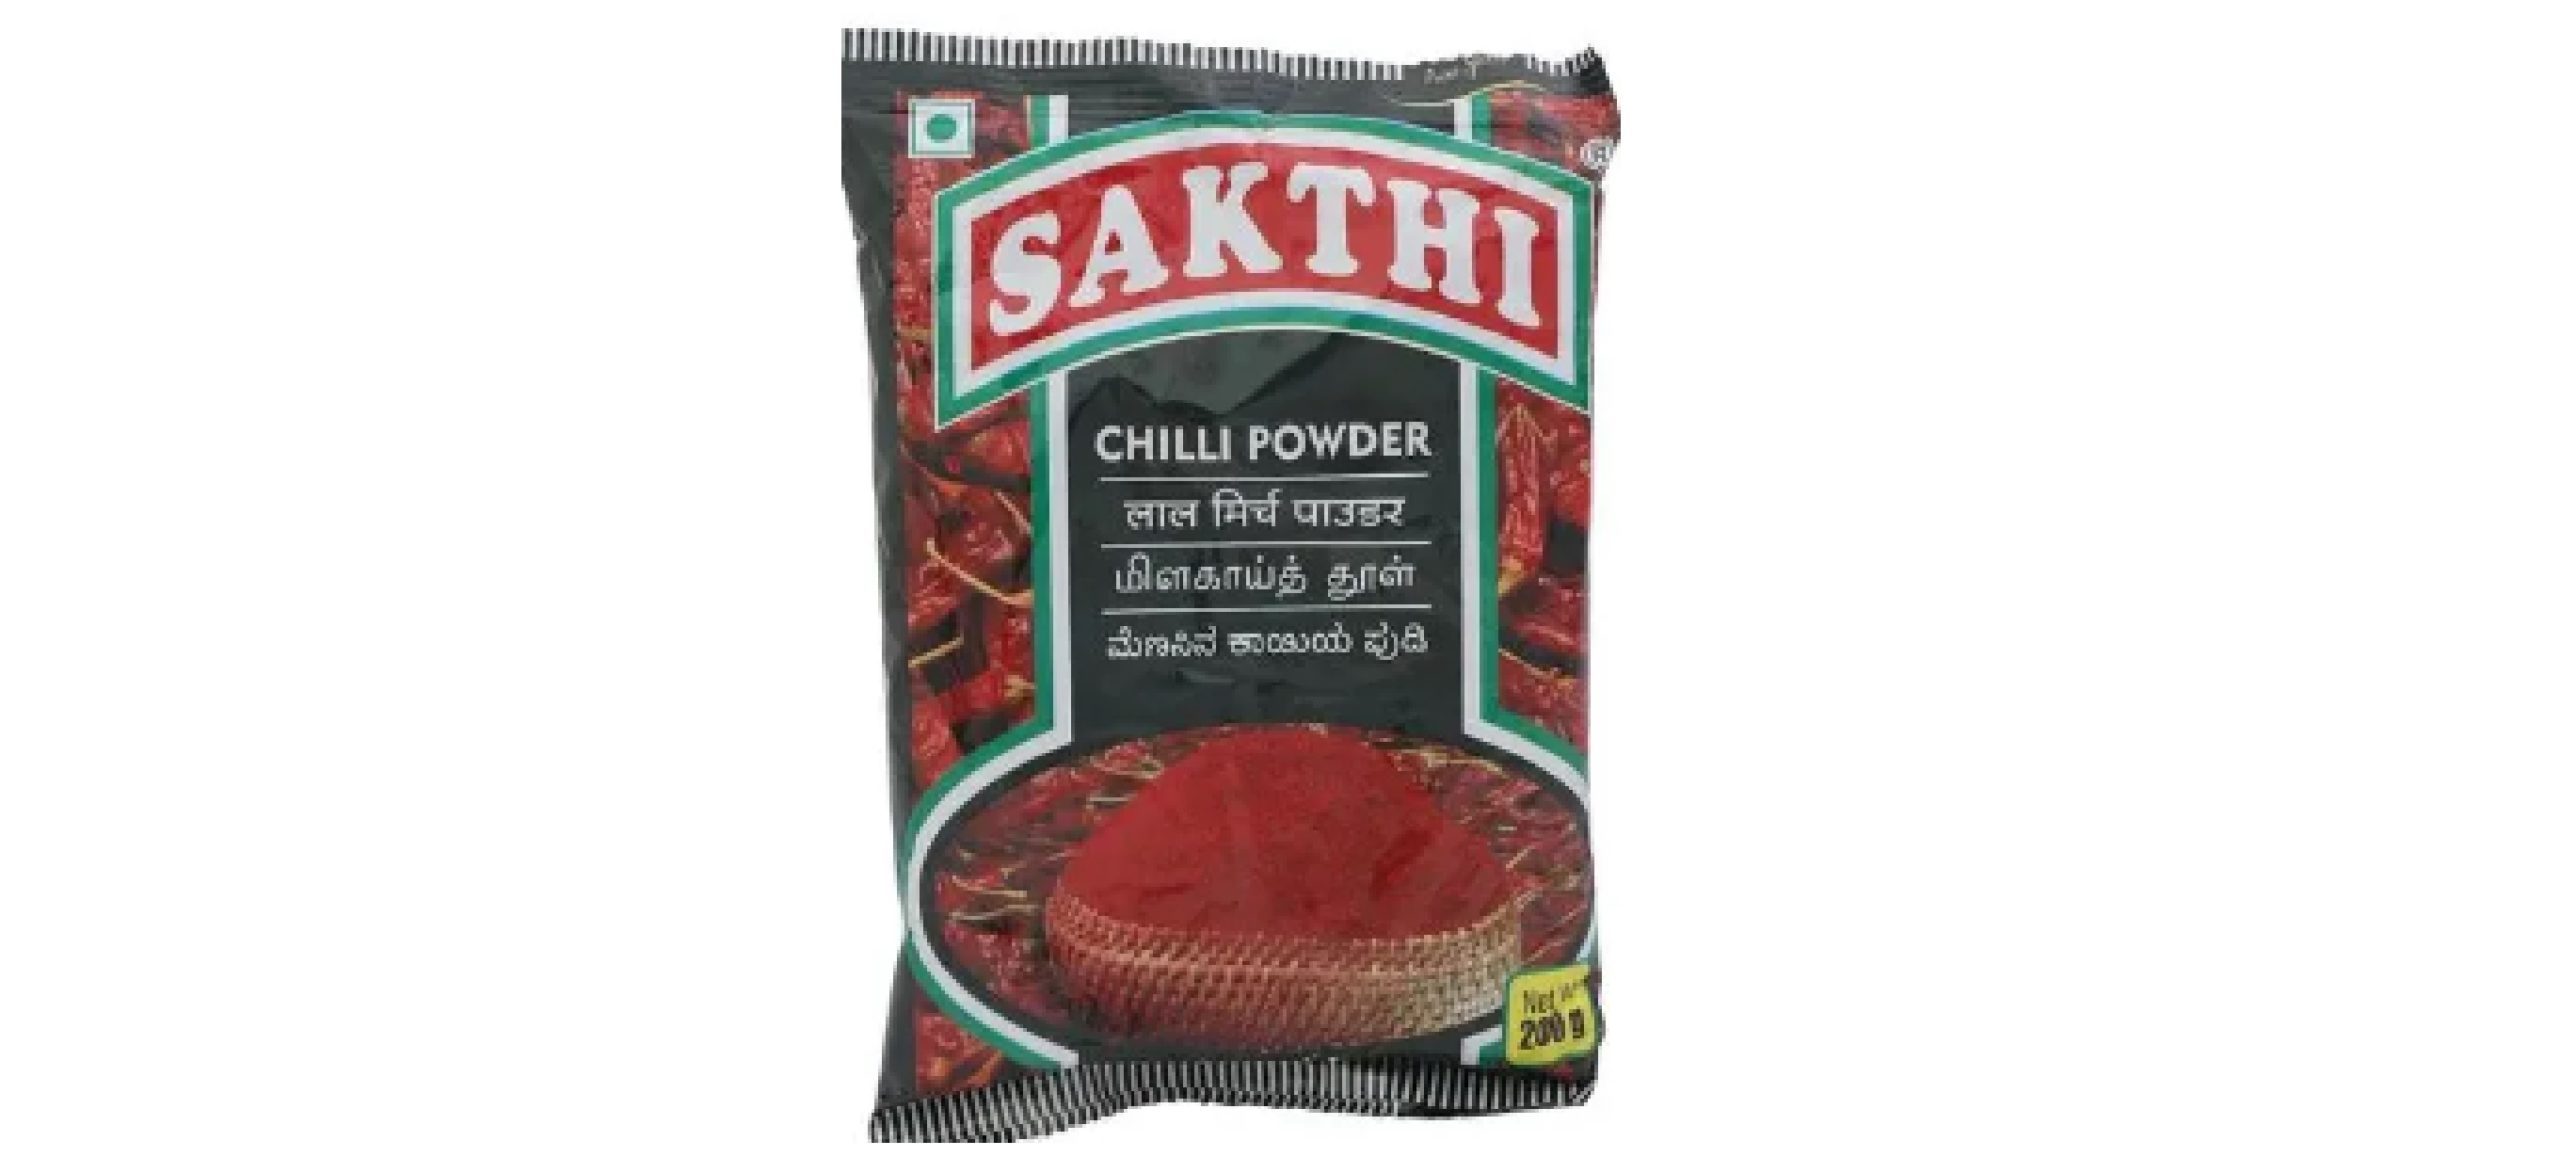 Sakthi Chilli Powder -200g